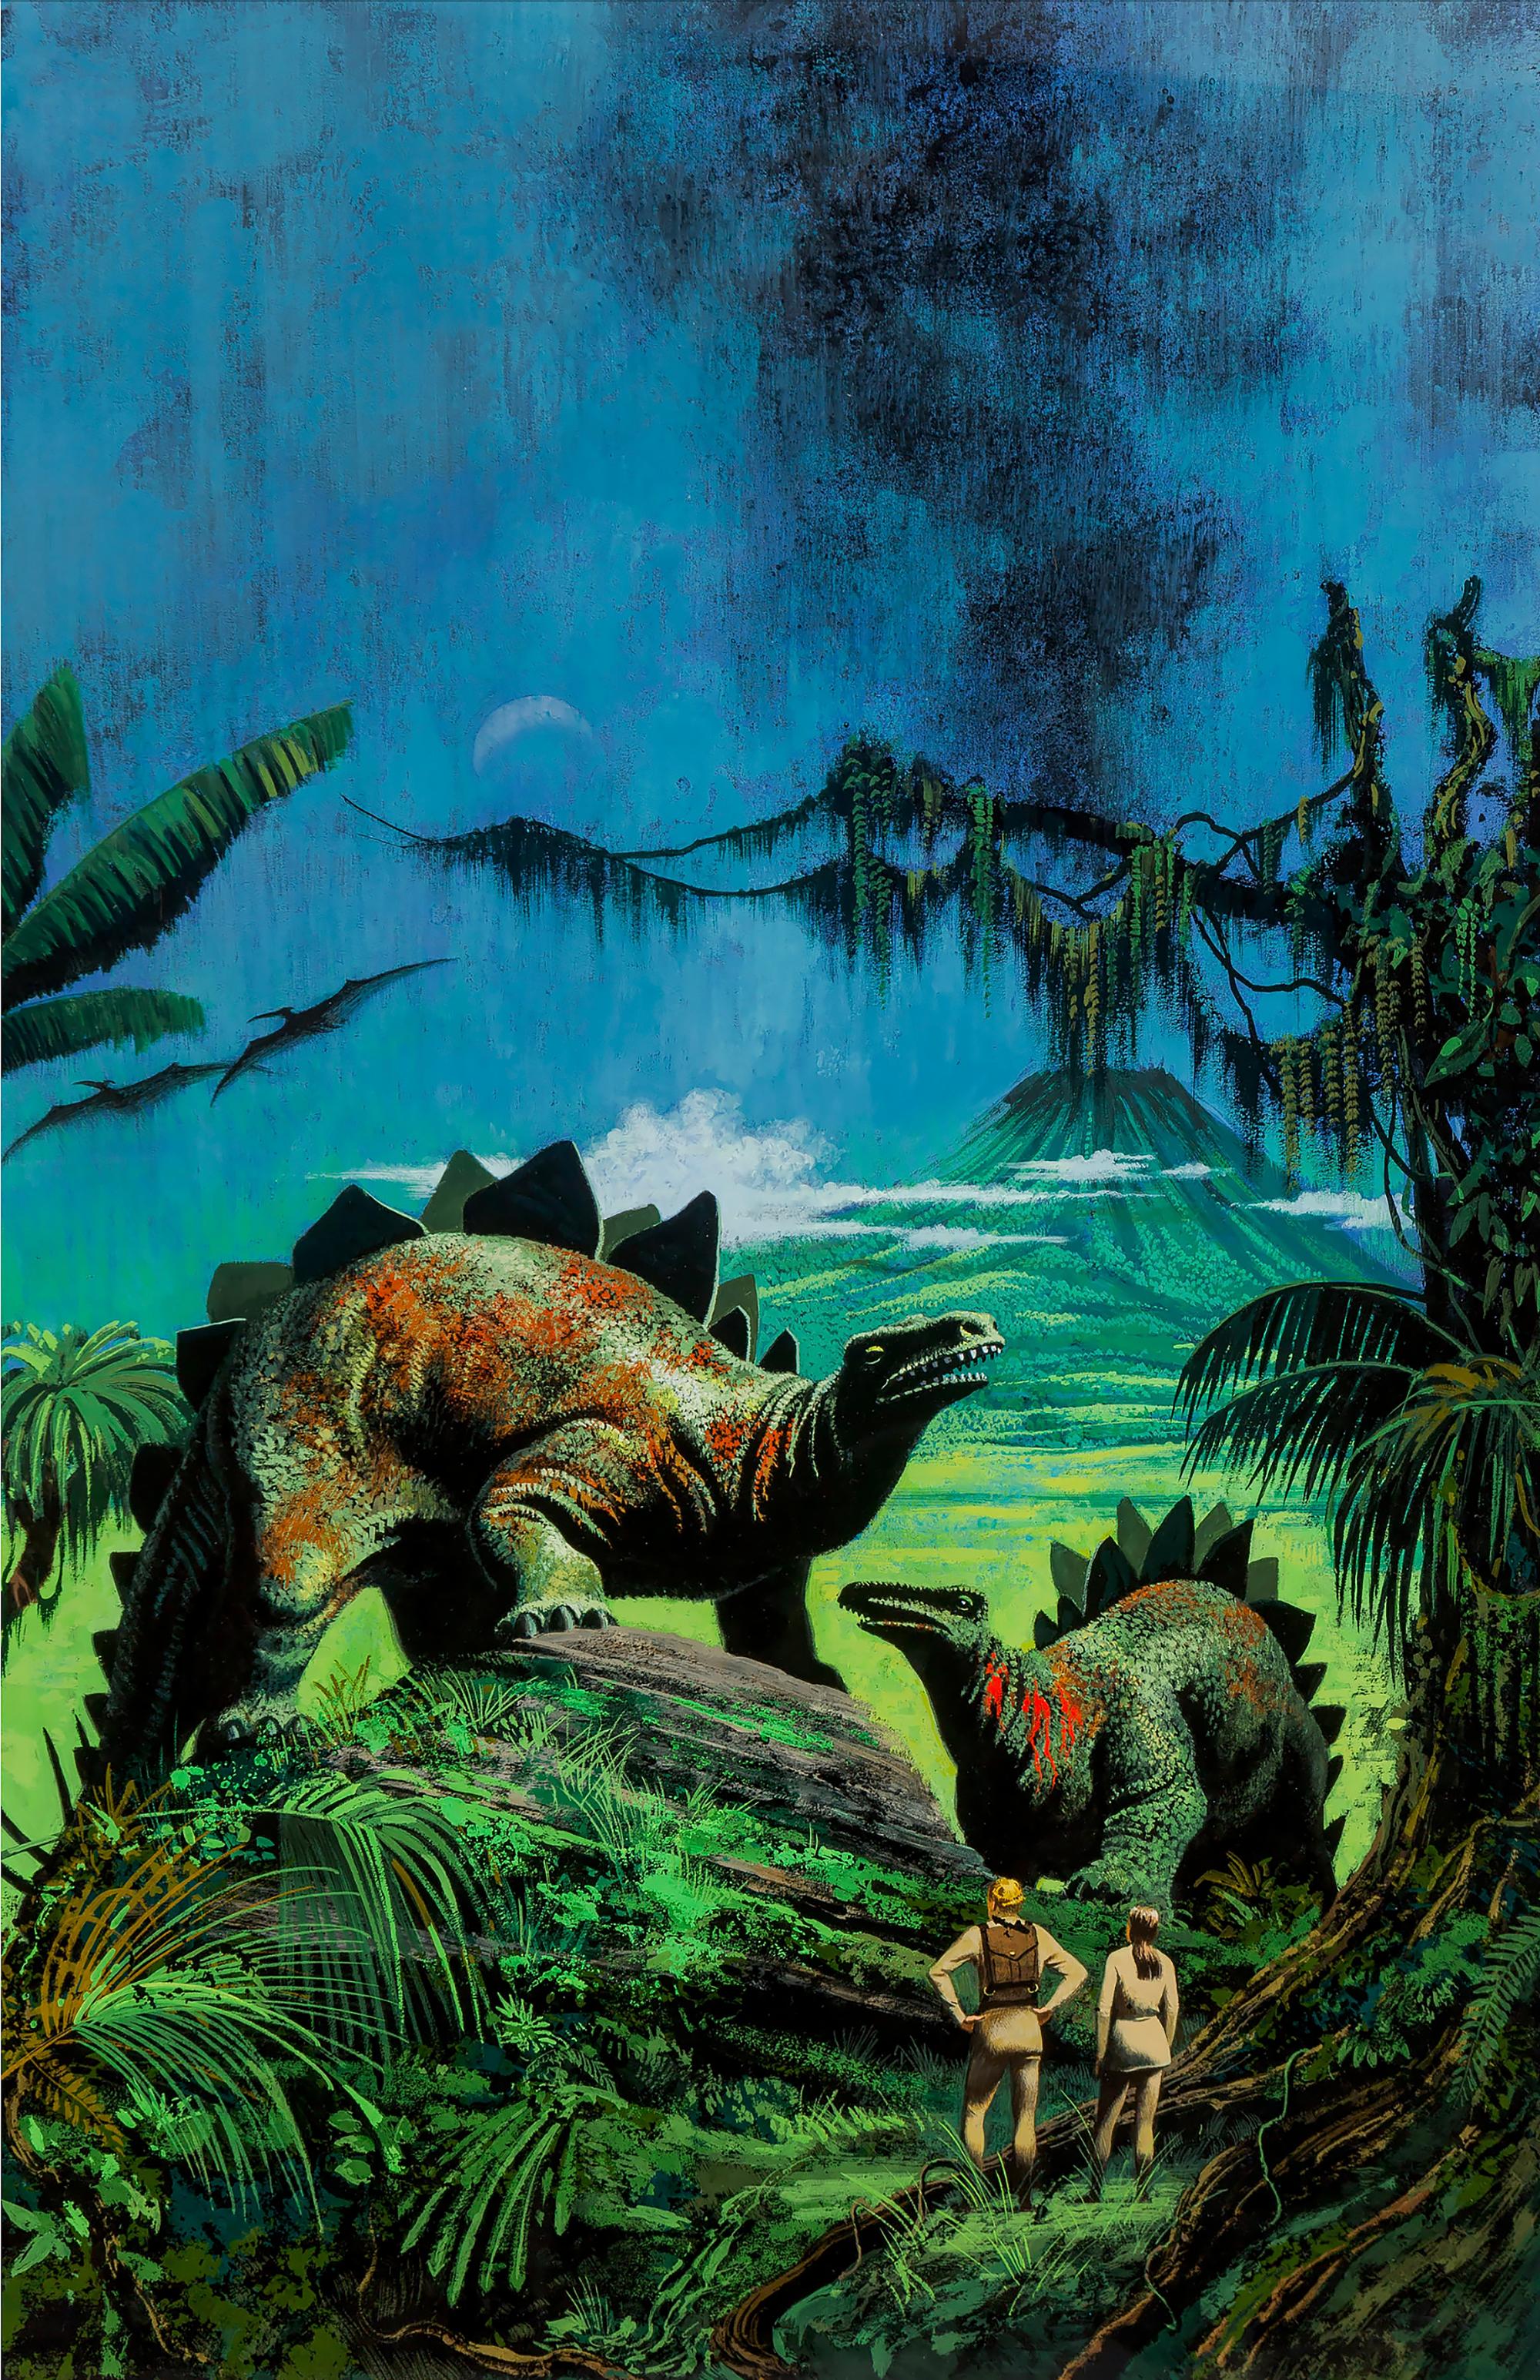 Animal Painting Don Punchatz - Dinosaurs et volcans. Image d'un parc jurassique